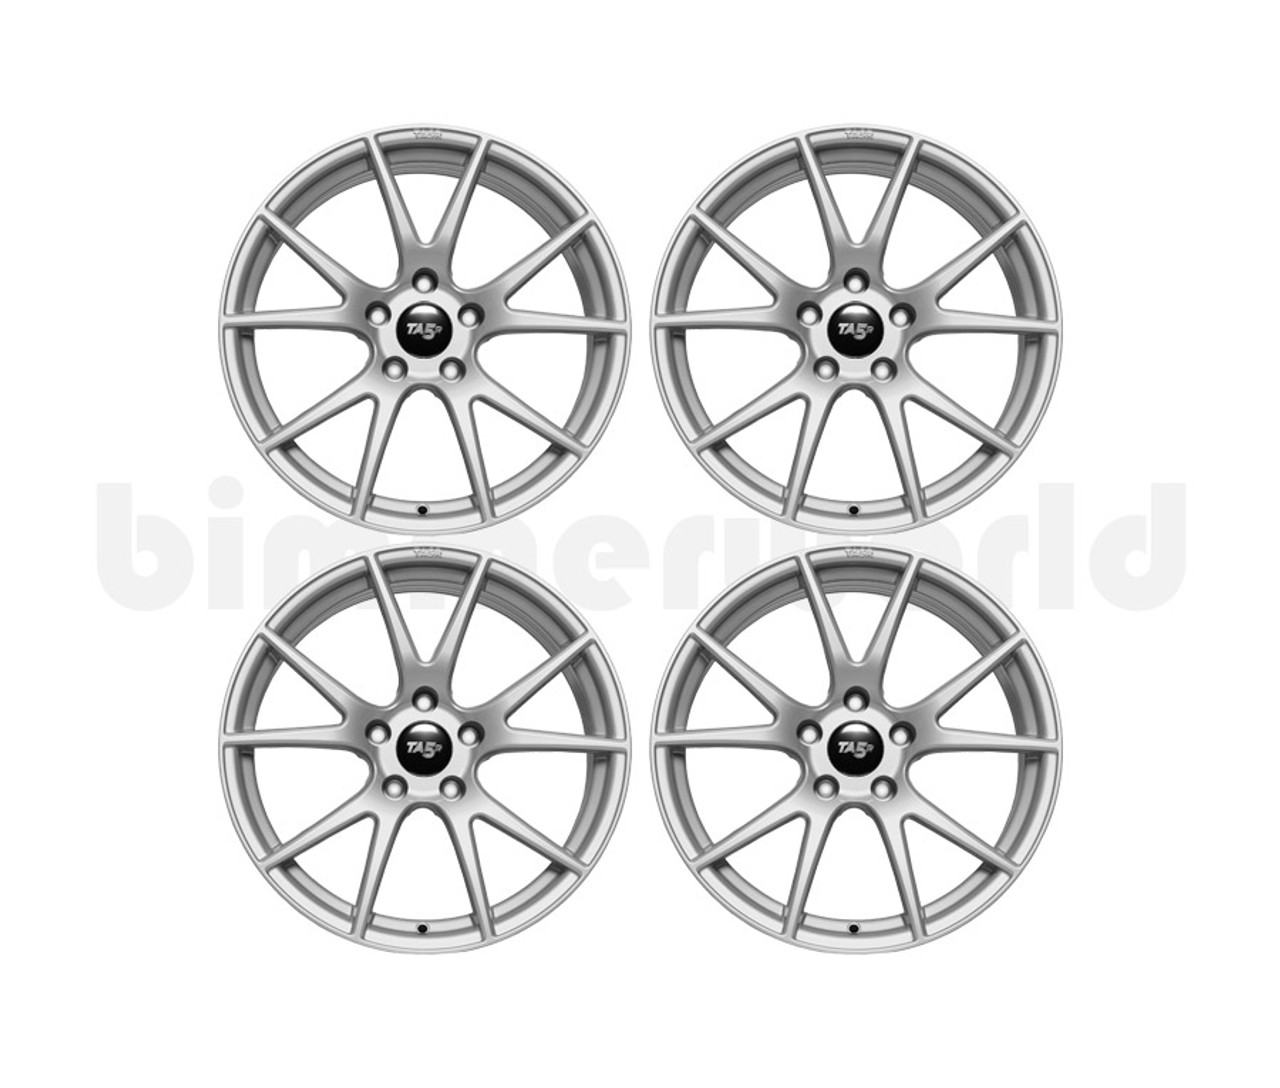 BimmerWorld 17x8.5 TA5R Wheel Set - E36, E46, F3X, E60 Xi, Z3, E85  - Gloss Gunmetal